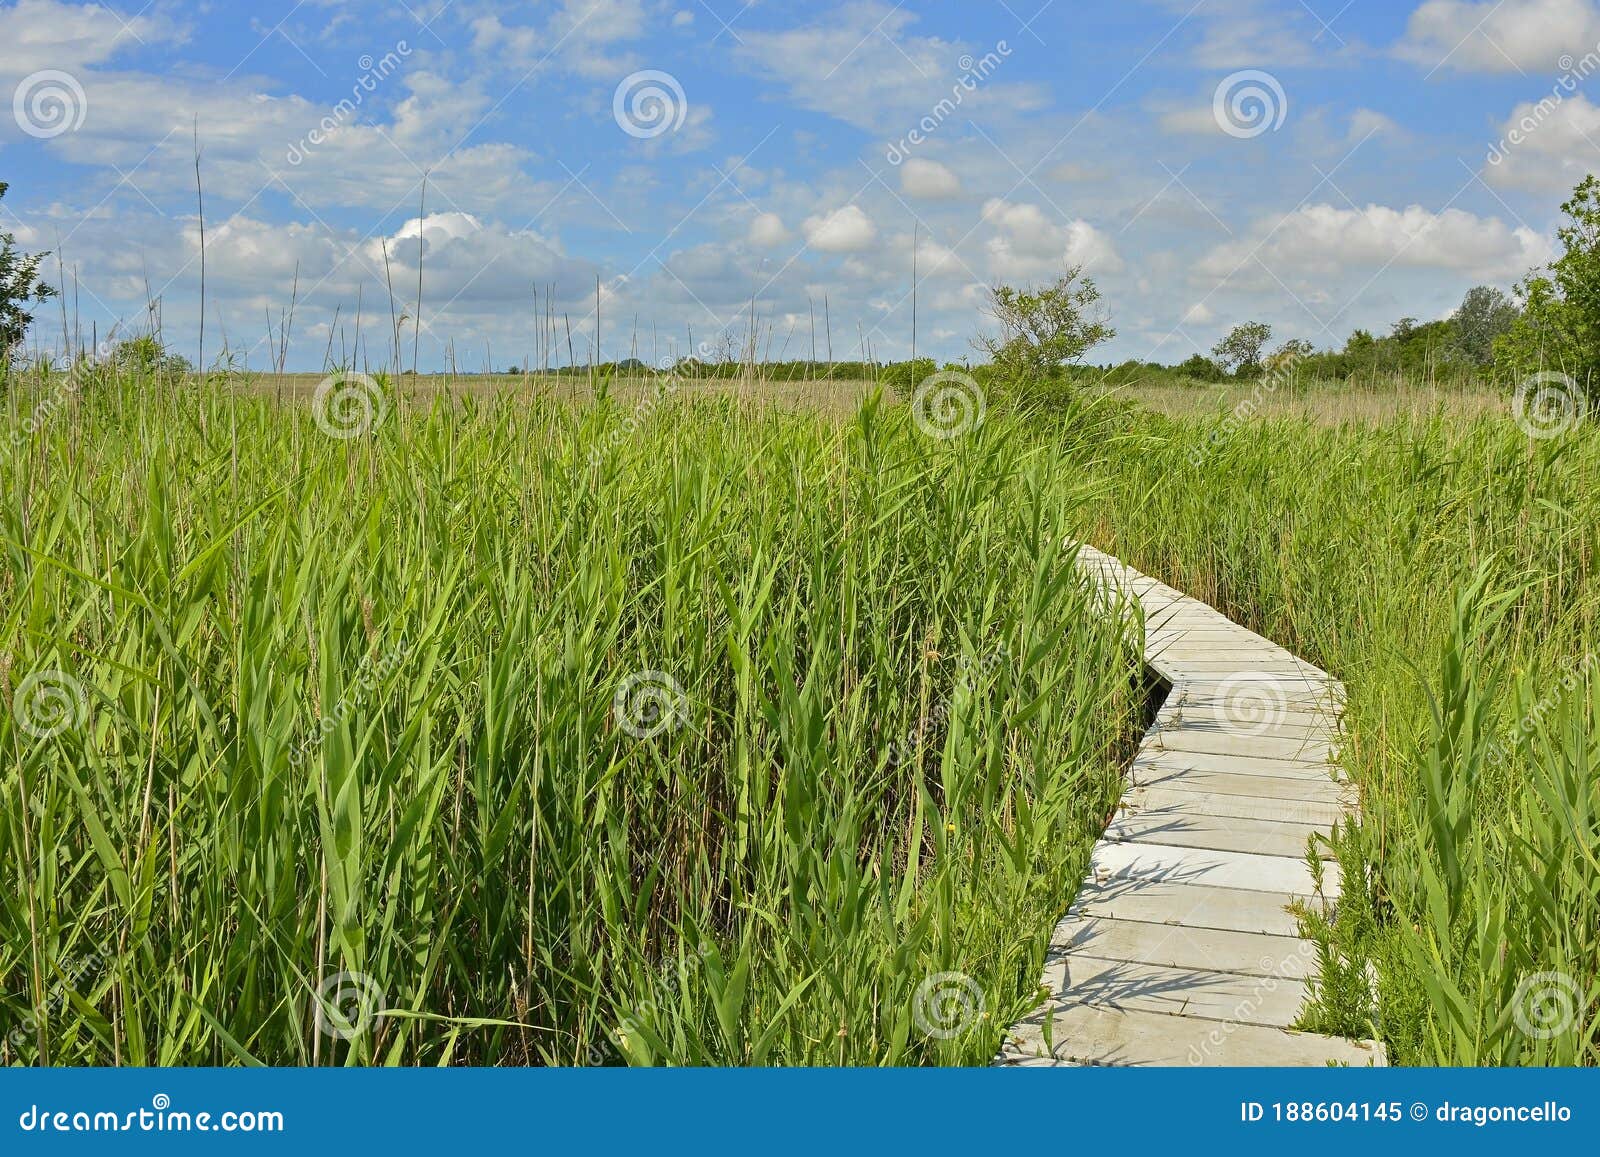 Wooden Walkway Across Wetland Stock Image Image Of Italy Countryside